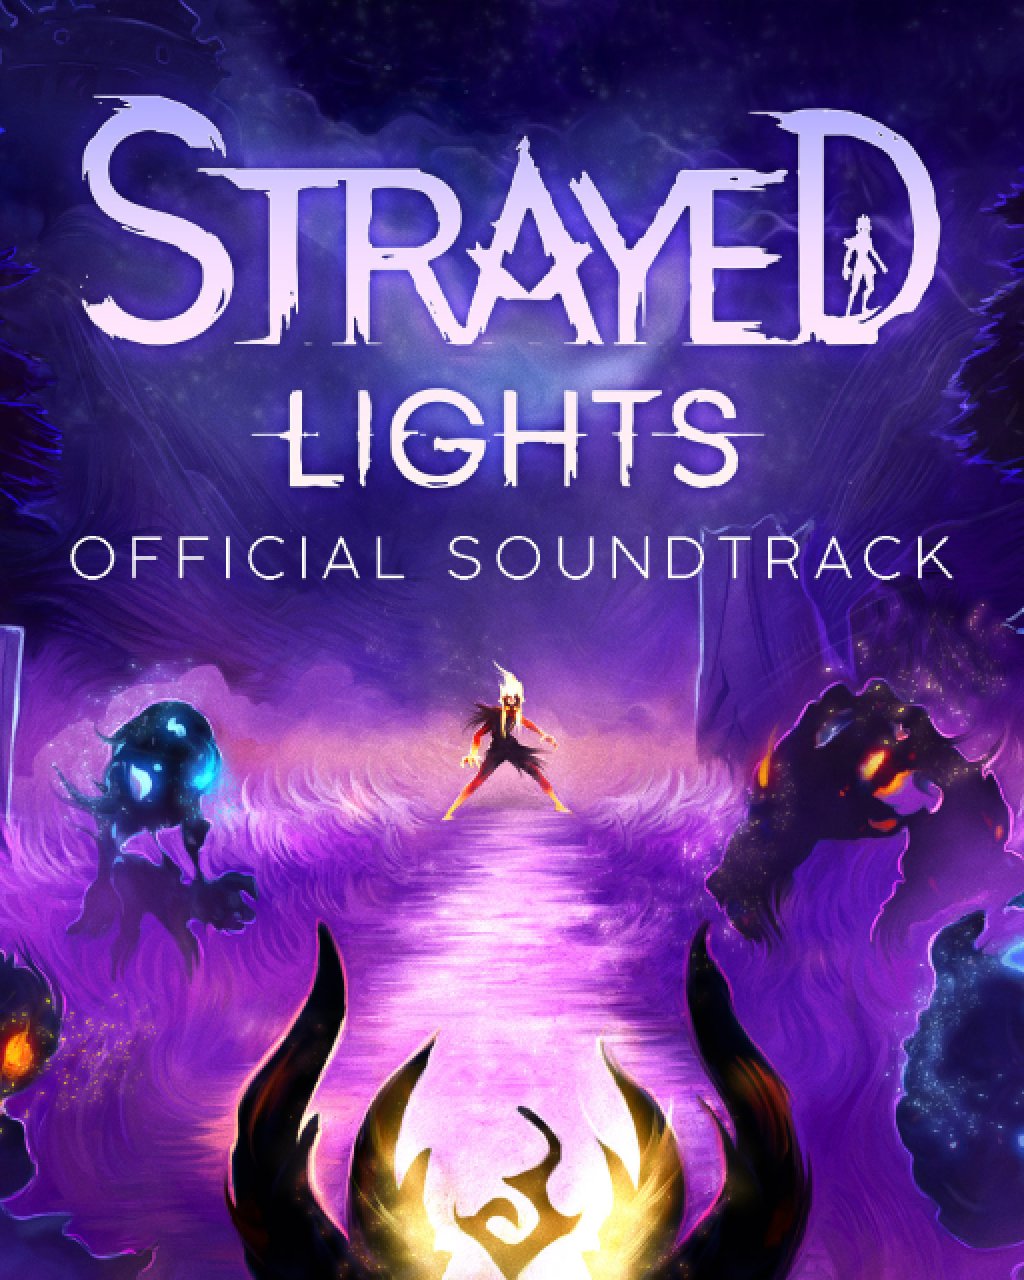 Strayed Lights Soundtrack